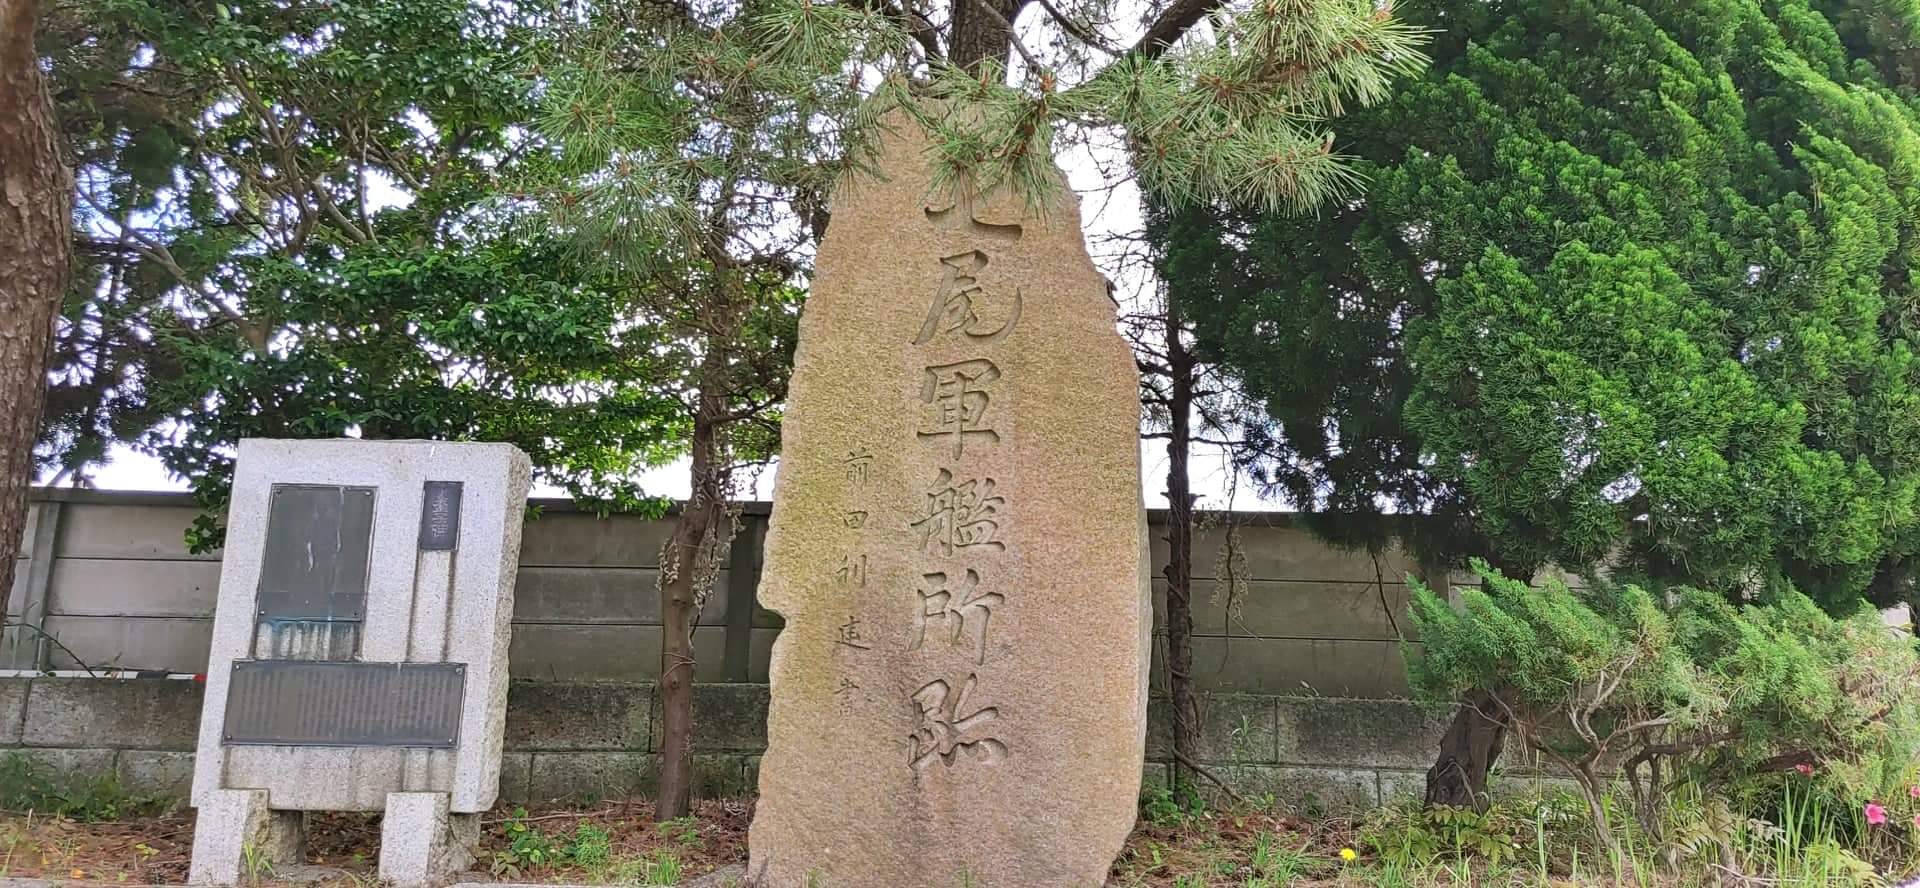 加賀藩が七尾港の出崎に作った七尾軍艦所の記念碑「七尾軍艦所跡(ななおぐんかんじょあと)」【七尾市】